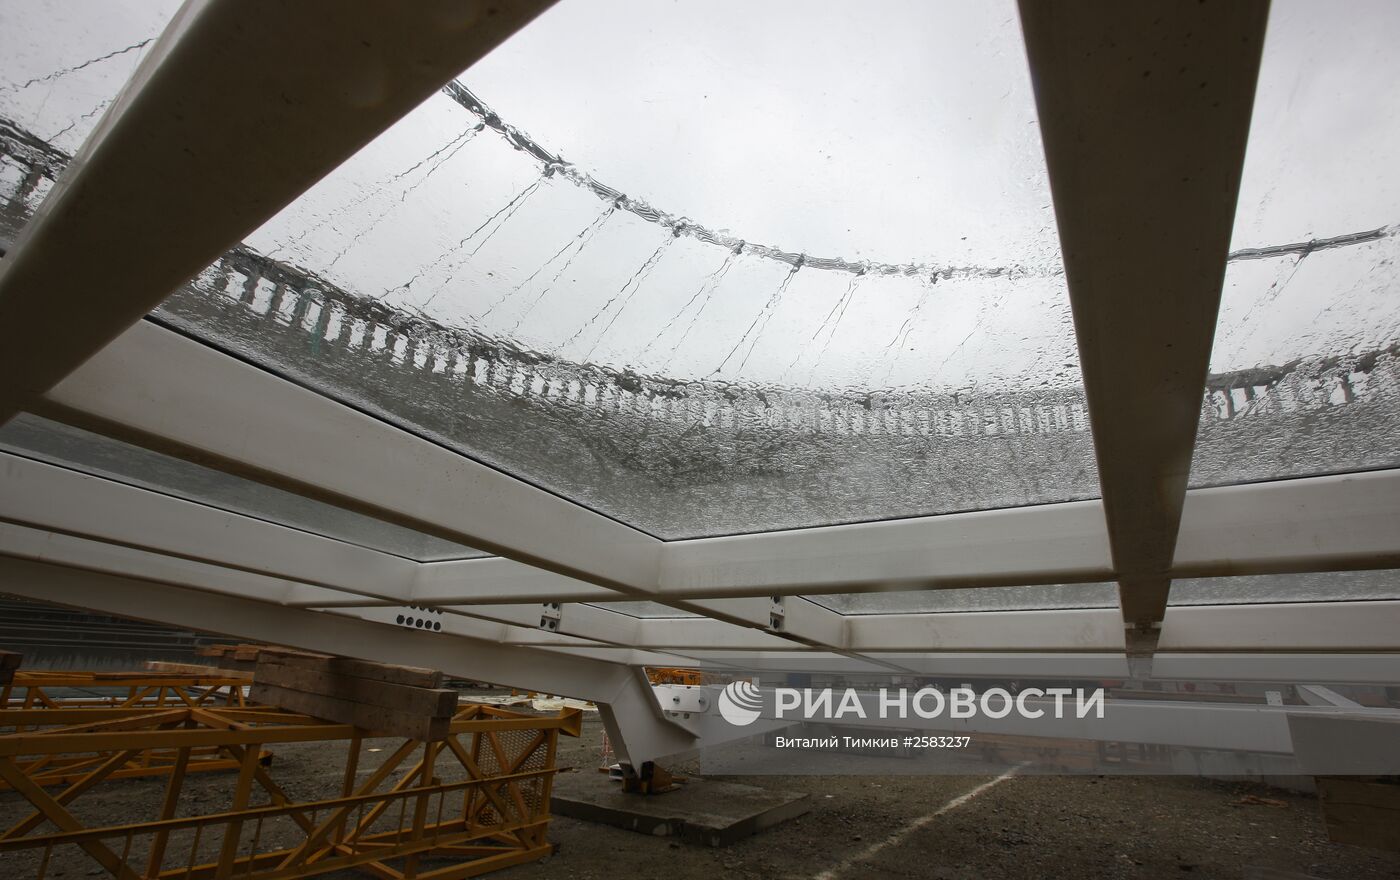 Строительство стадиона ФК "Краснодар"